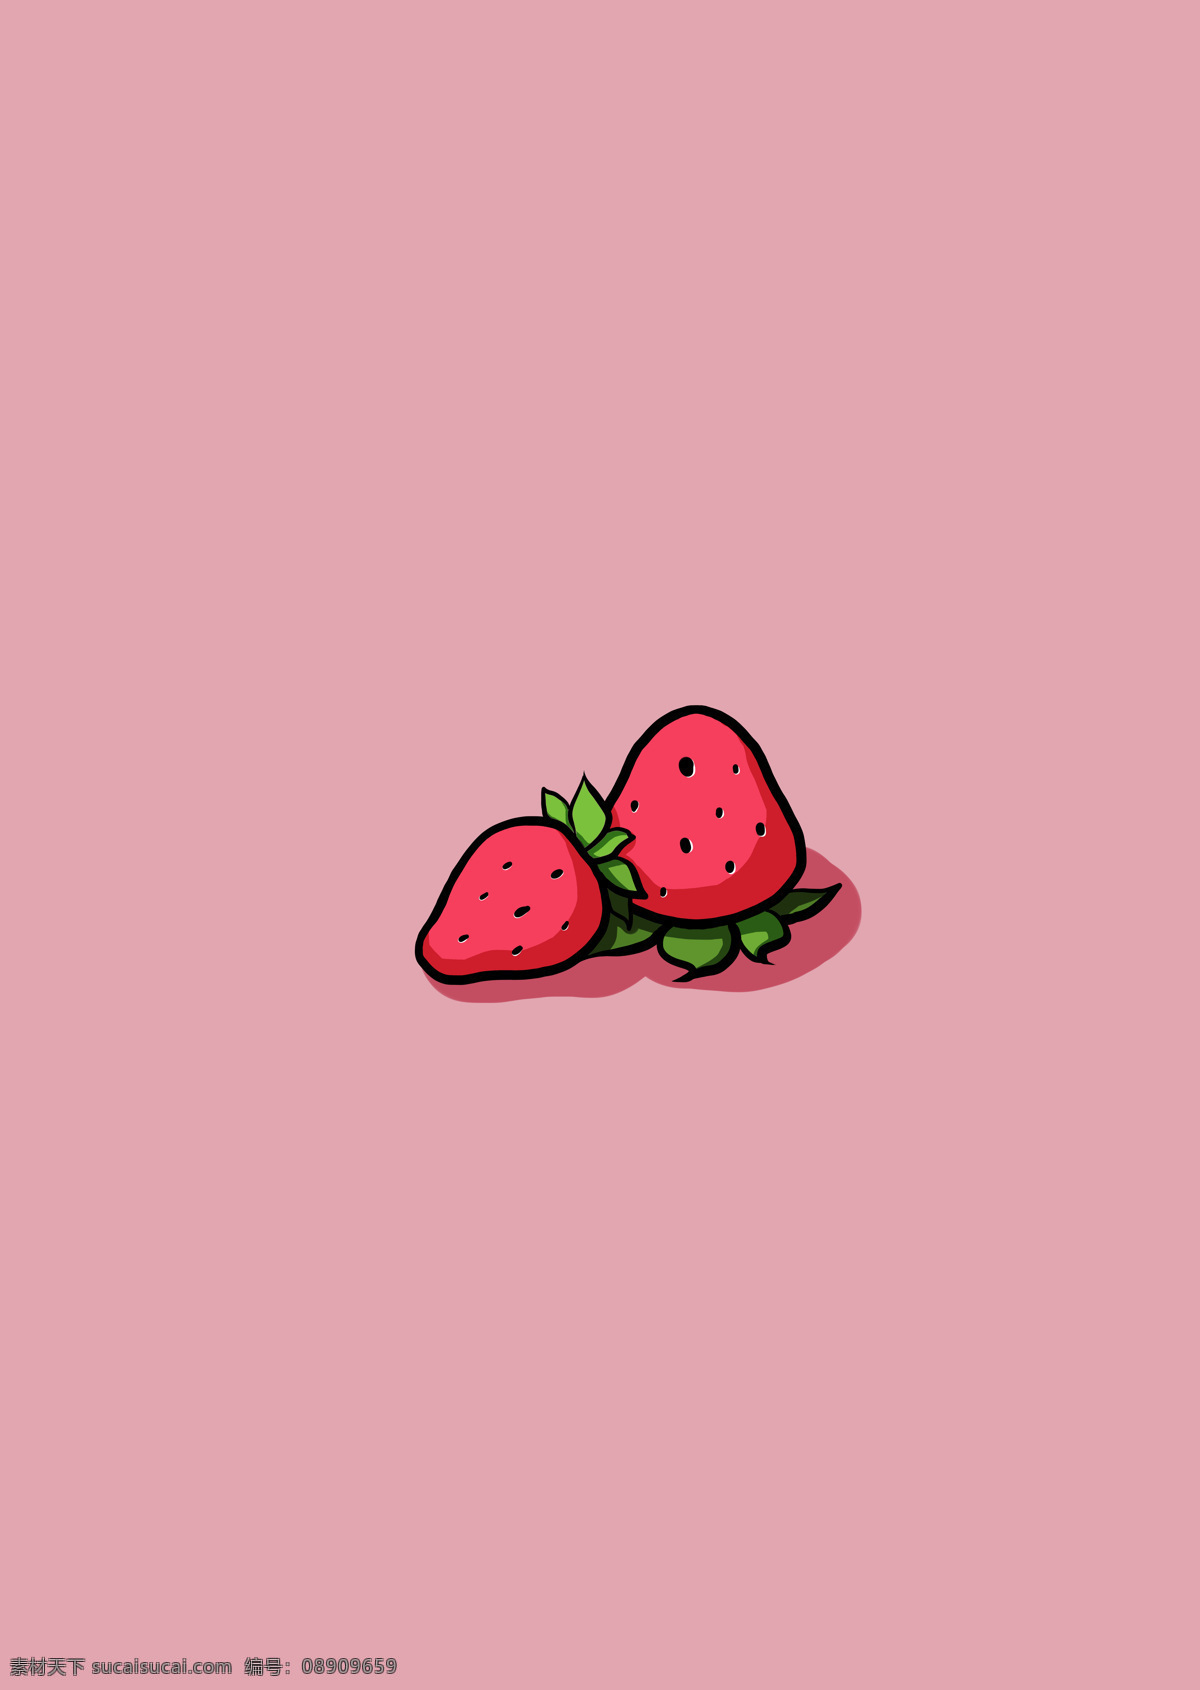 草莓 粉红色 手绘 可爱 壁纸